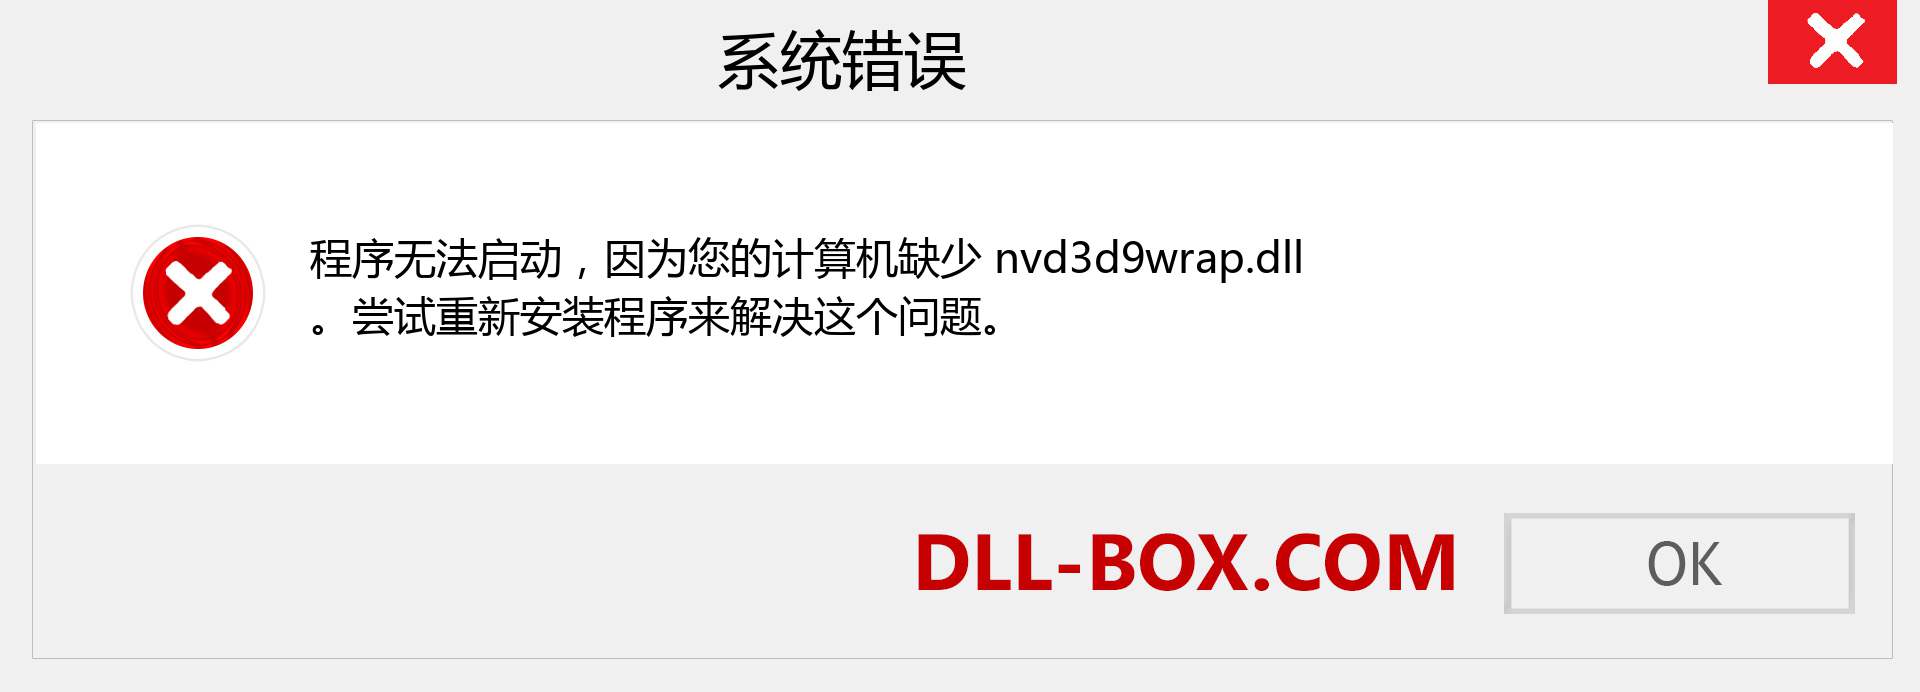 nvd3d9wrap.dll 文件丢失？。 适用于 Windows 7、8、10 的下载 - 修复 Windows、照片、图像上的 nvd3d9wrap dll 丢失错误